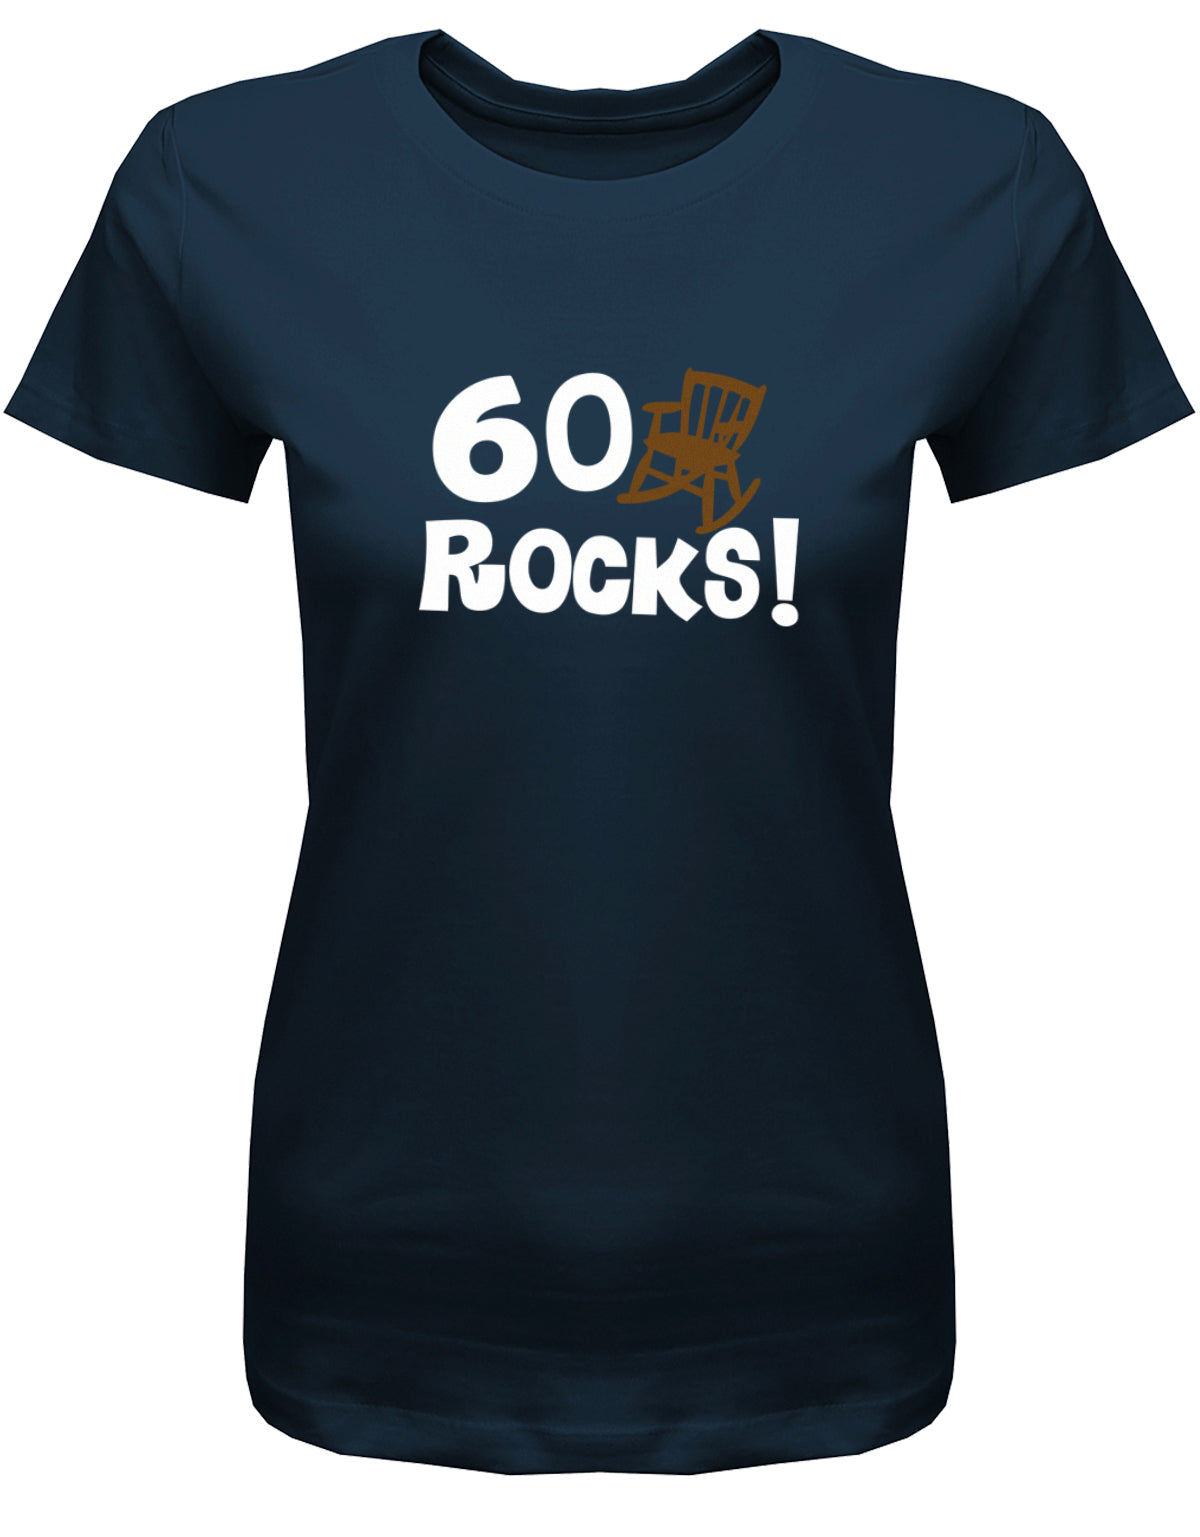 Lustiges T-Shirt zum 60 Geburtstag für die Frau Bedruckt mit 60 Rocks Schaukelstuhl. Navy